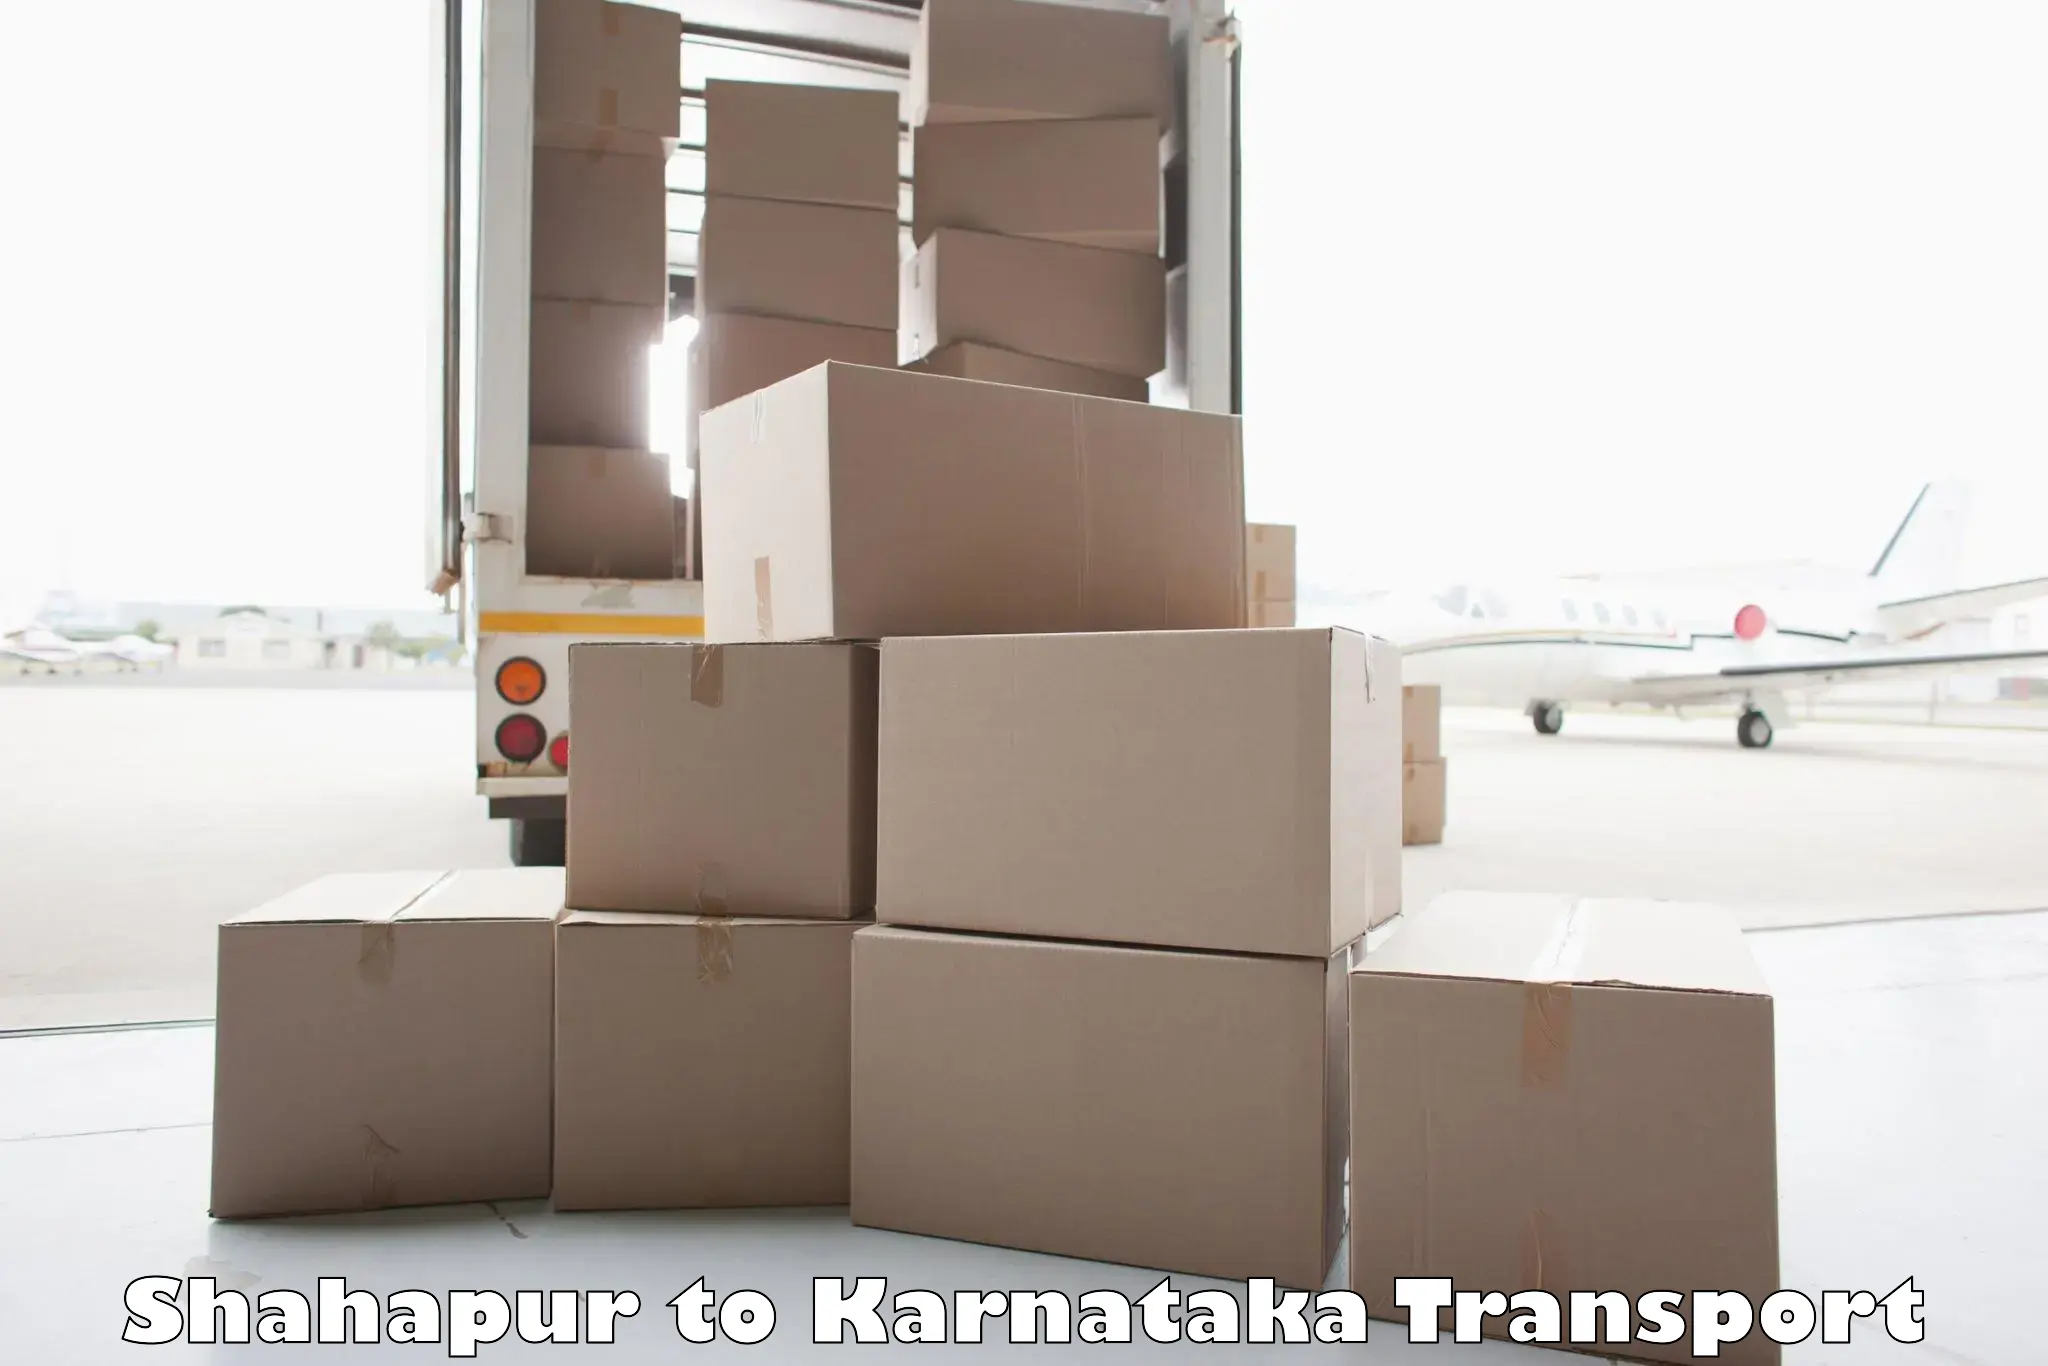 Interstate transport services Shahapur to Gauribidanur